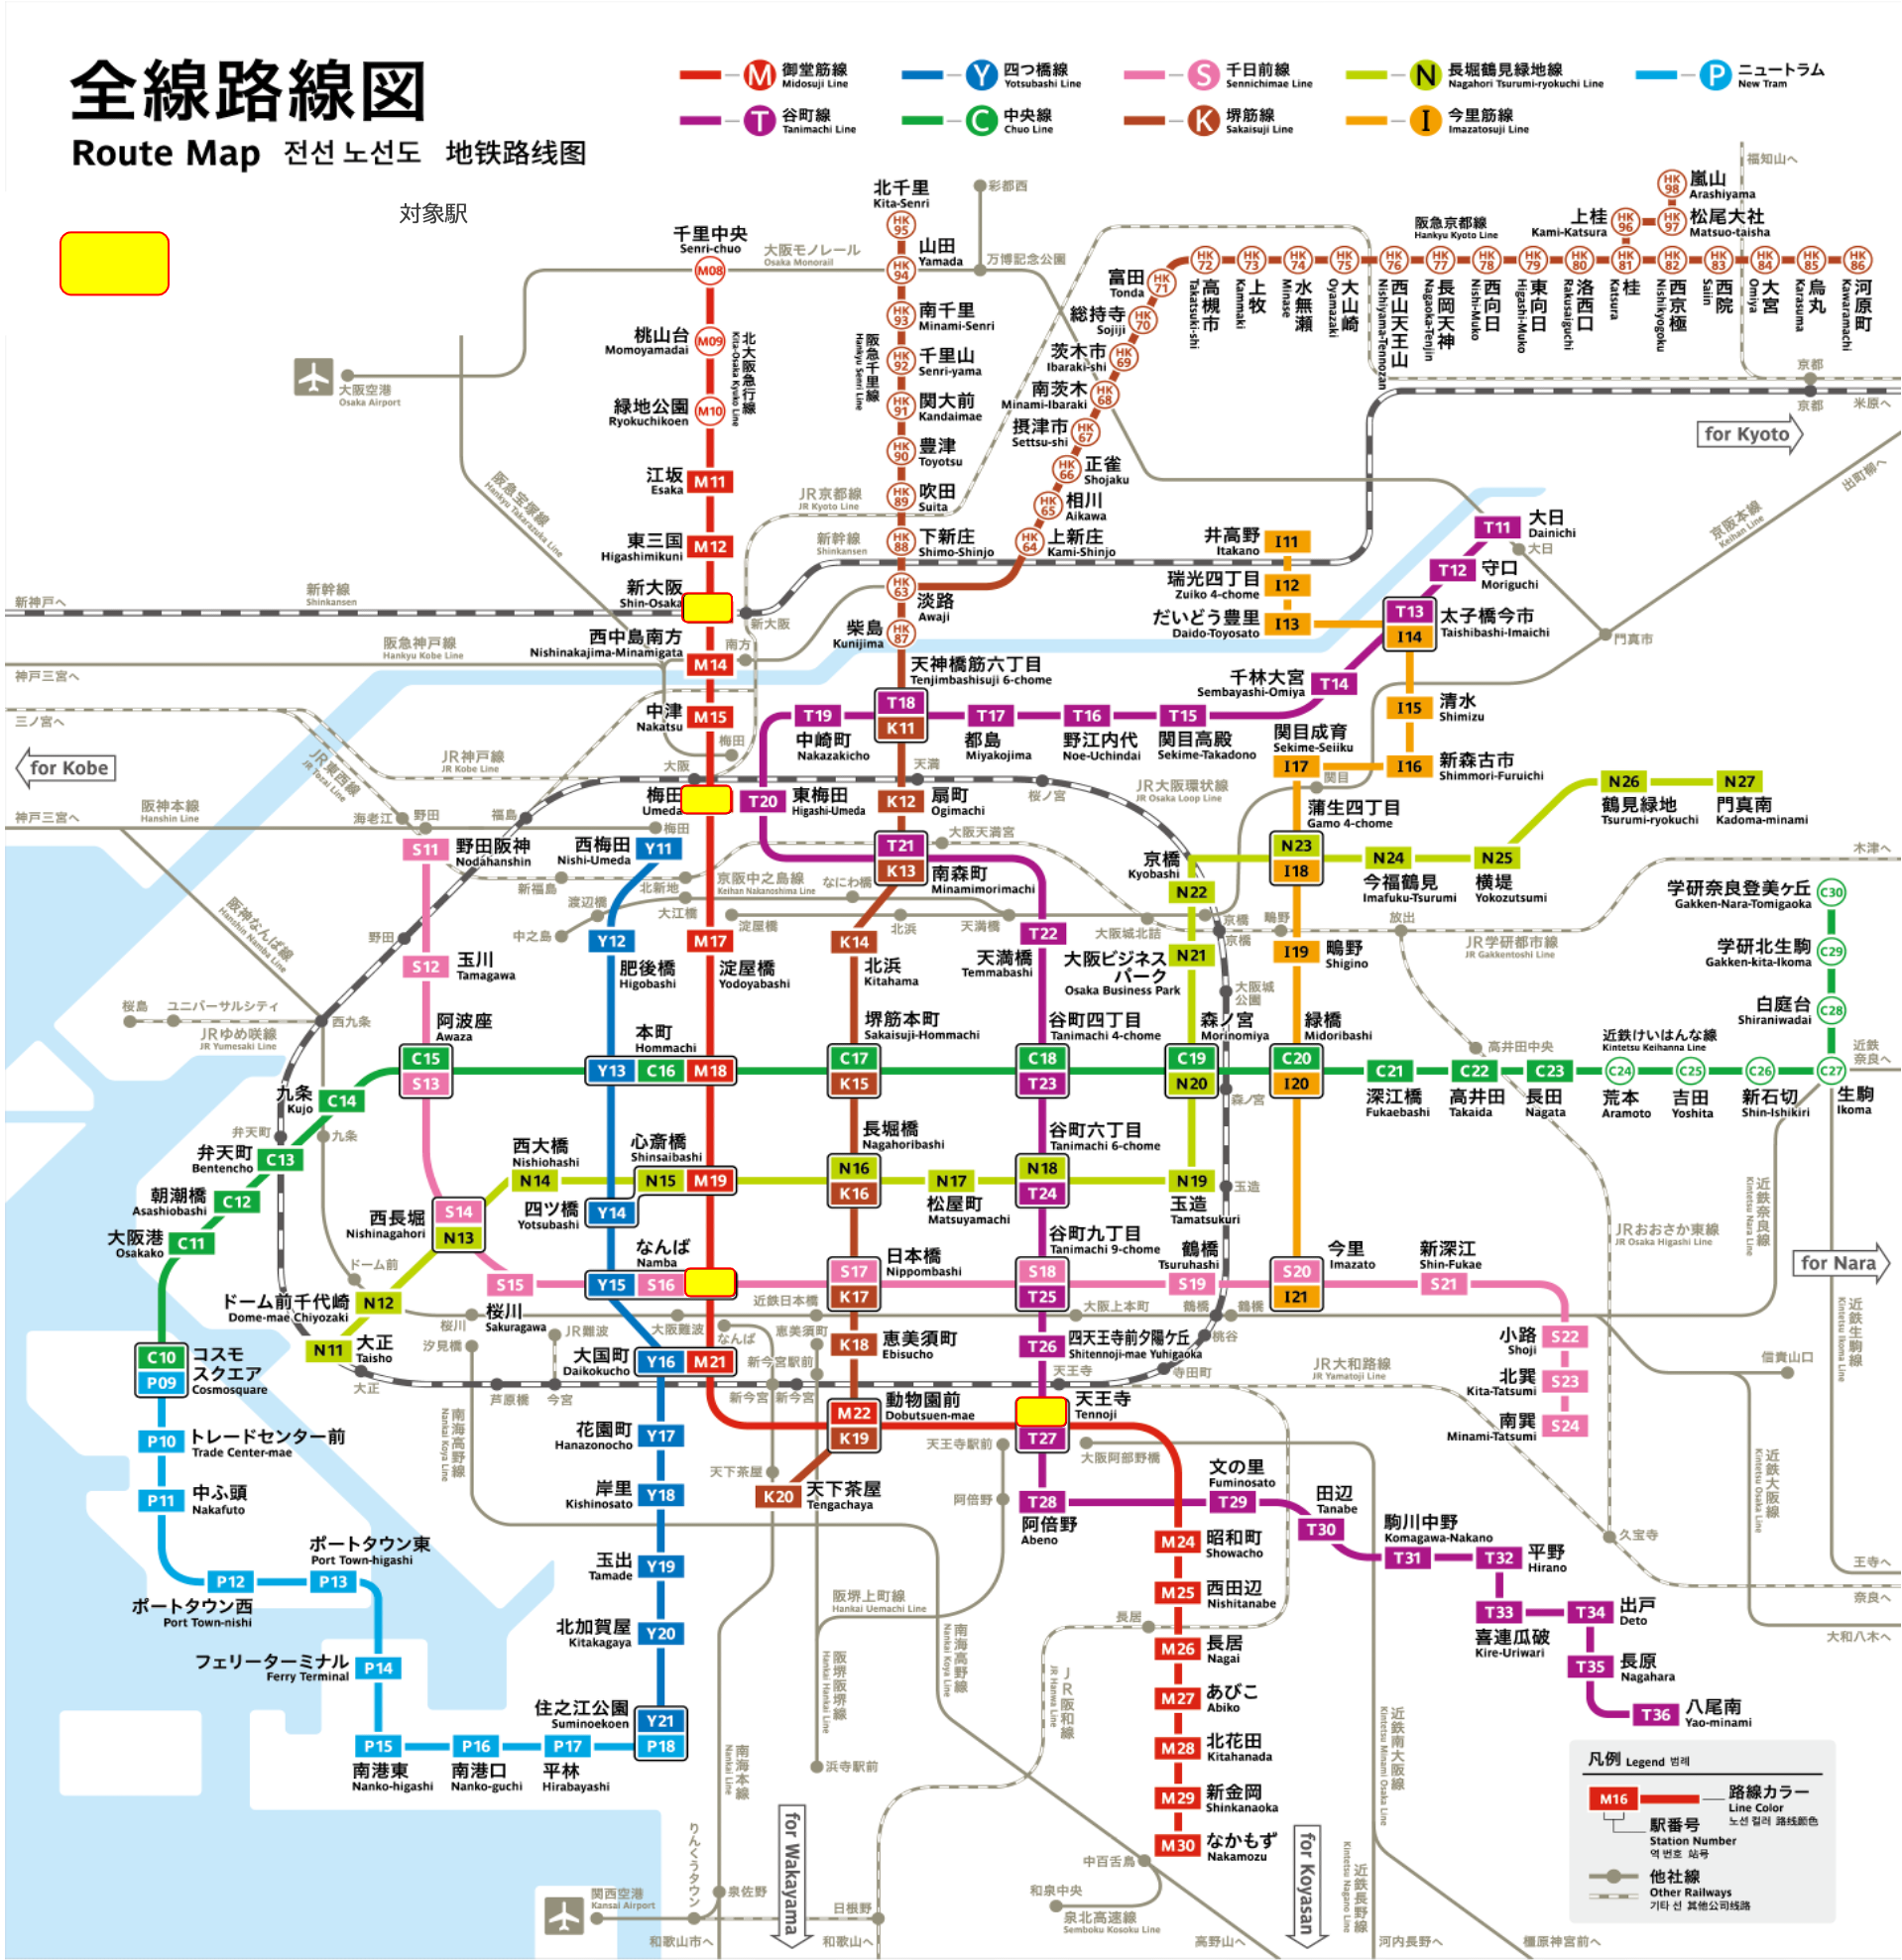 ネットワークビジョン 御堂筋線ターミナル4駅セット配置図